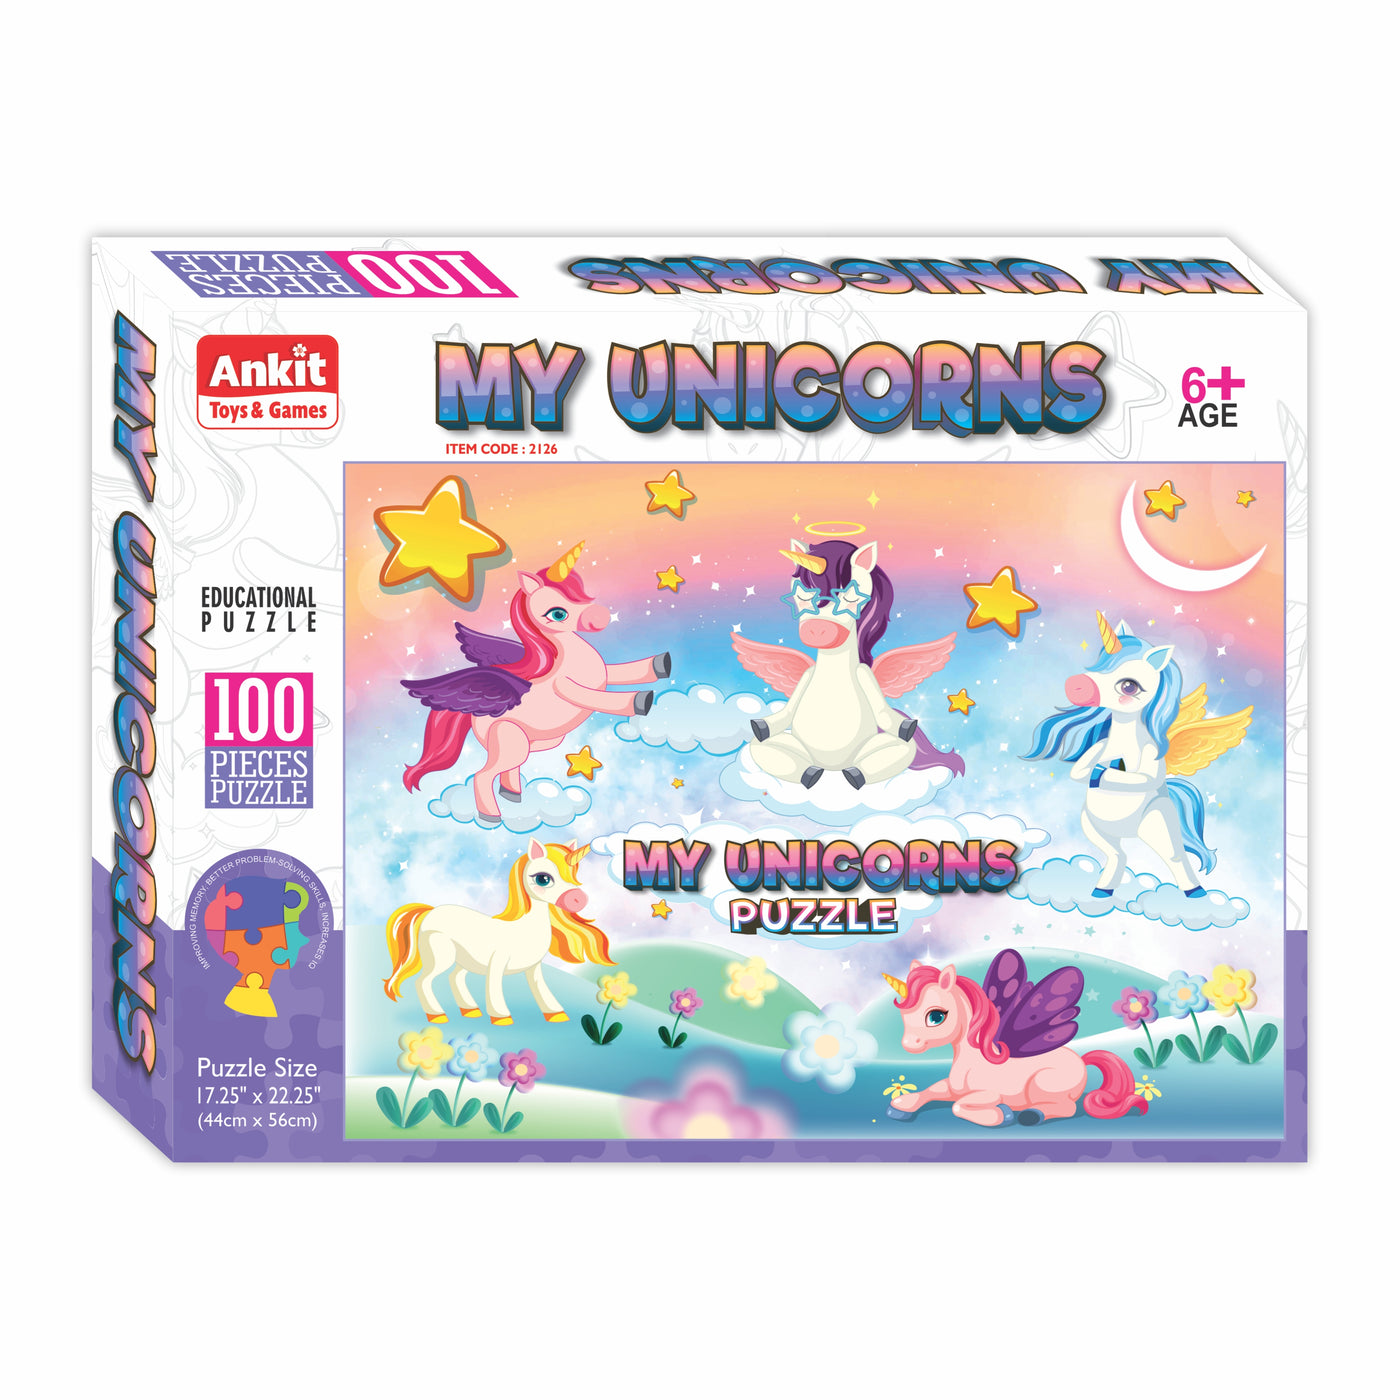 My Unicorns Puzzle